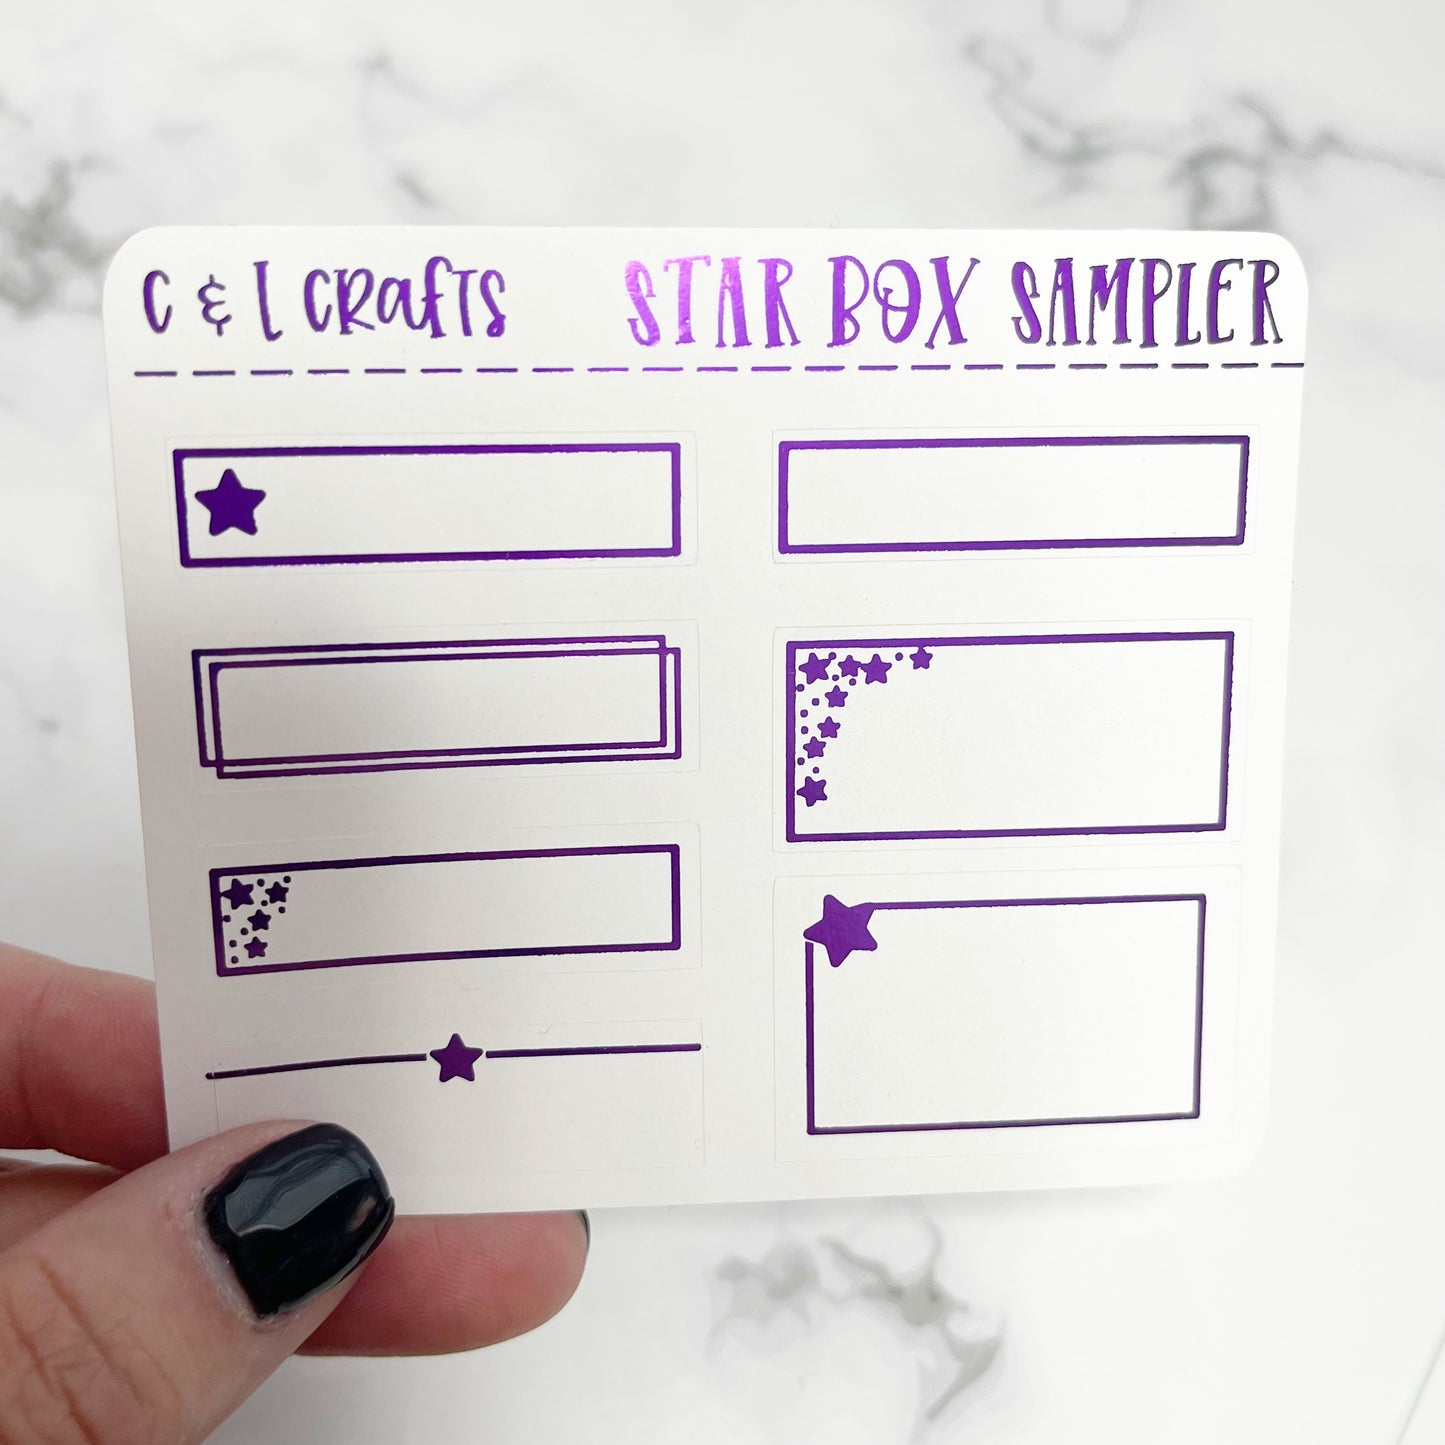 Star Box Sampler